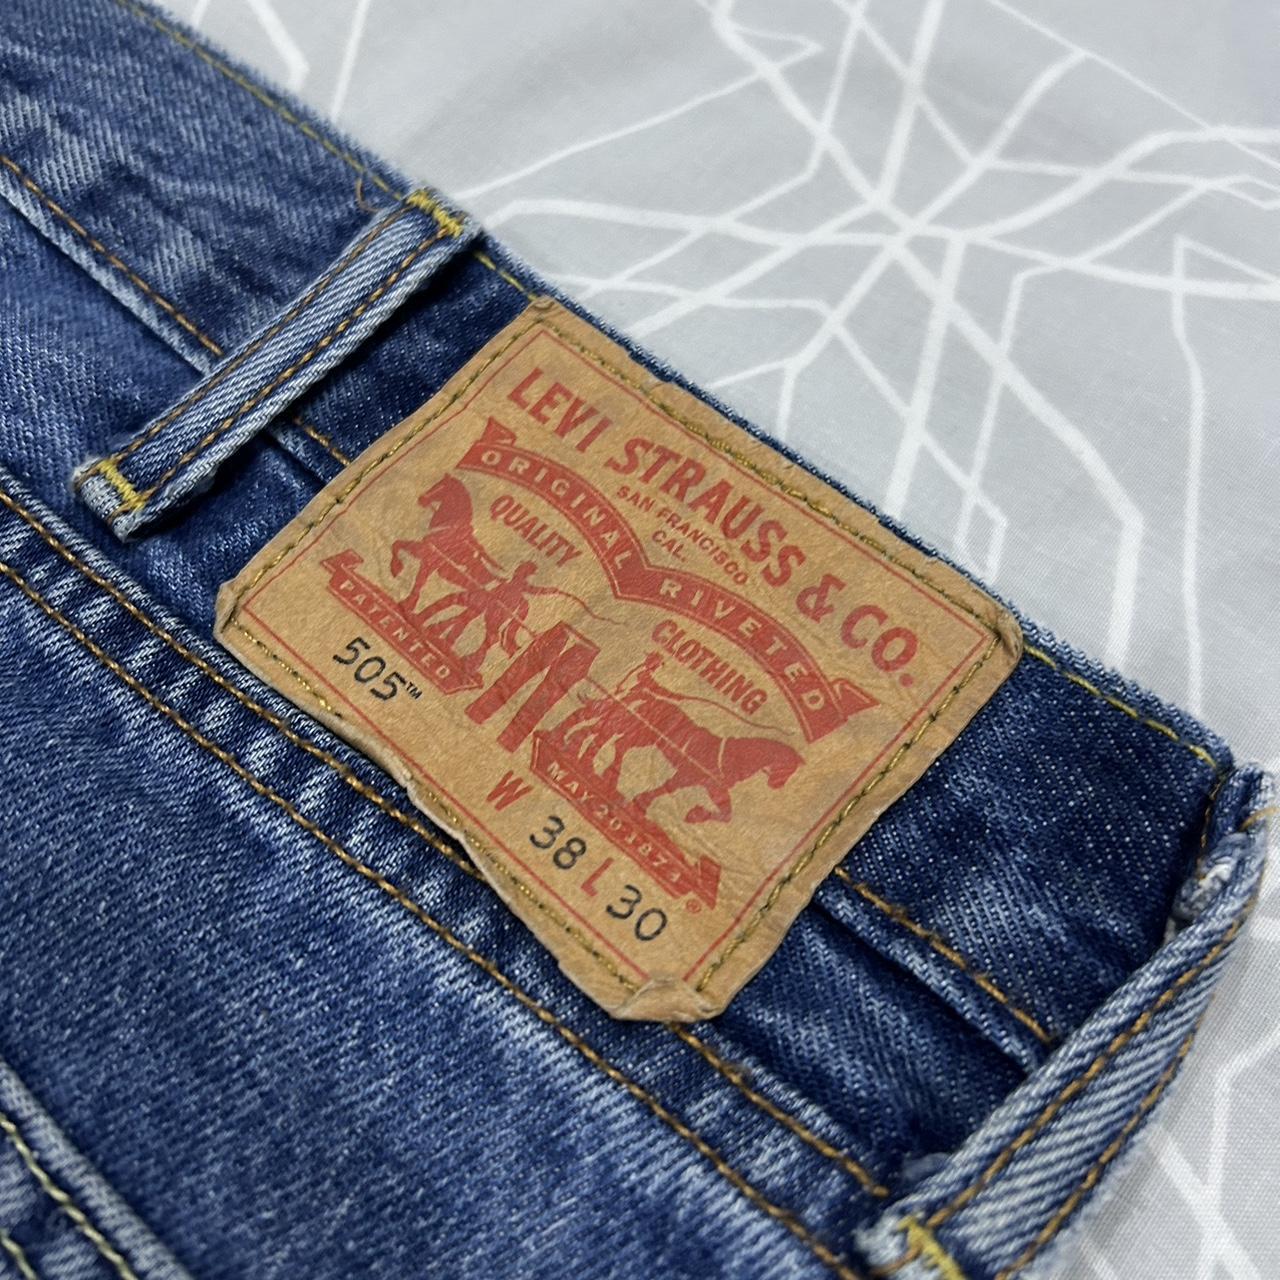 Levi’s 505 Jeans 🔵 Size: Waist 38, Length 30... - Depop